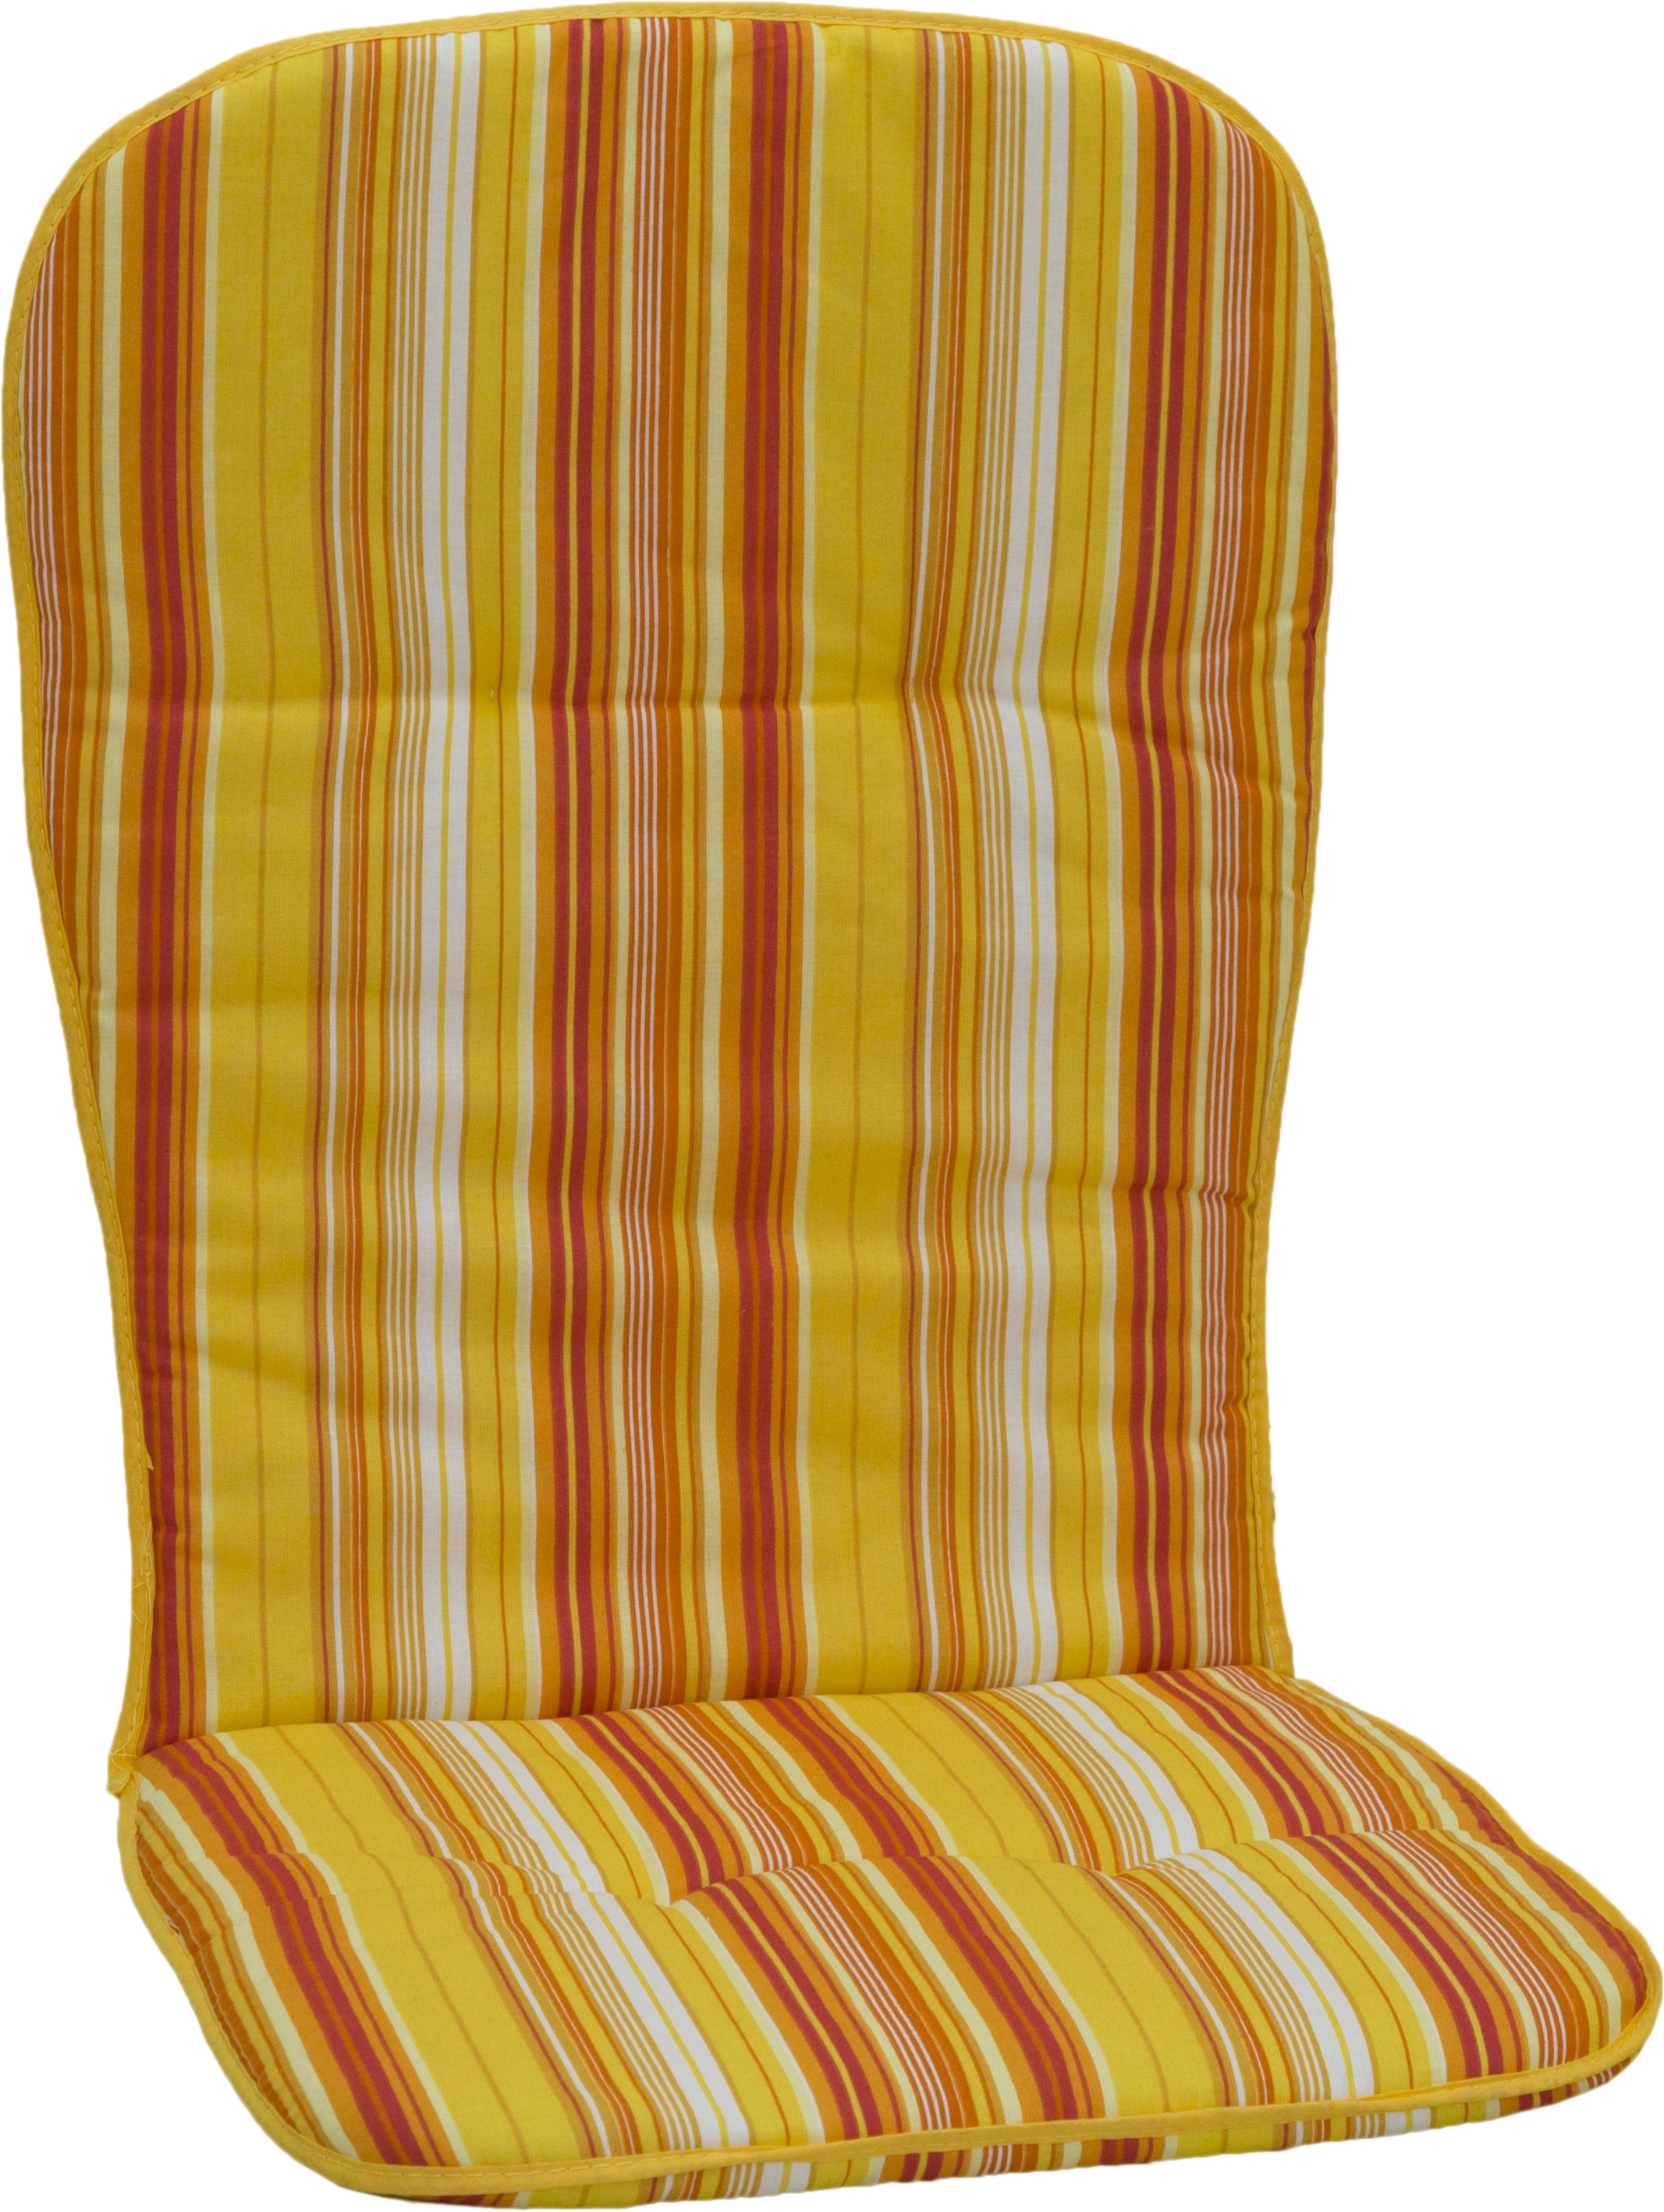 Campingstuhl hohe Sitzauflage gestreift in gelb weiß rot orange Polster 